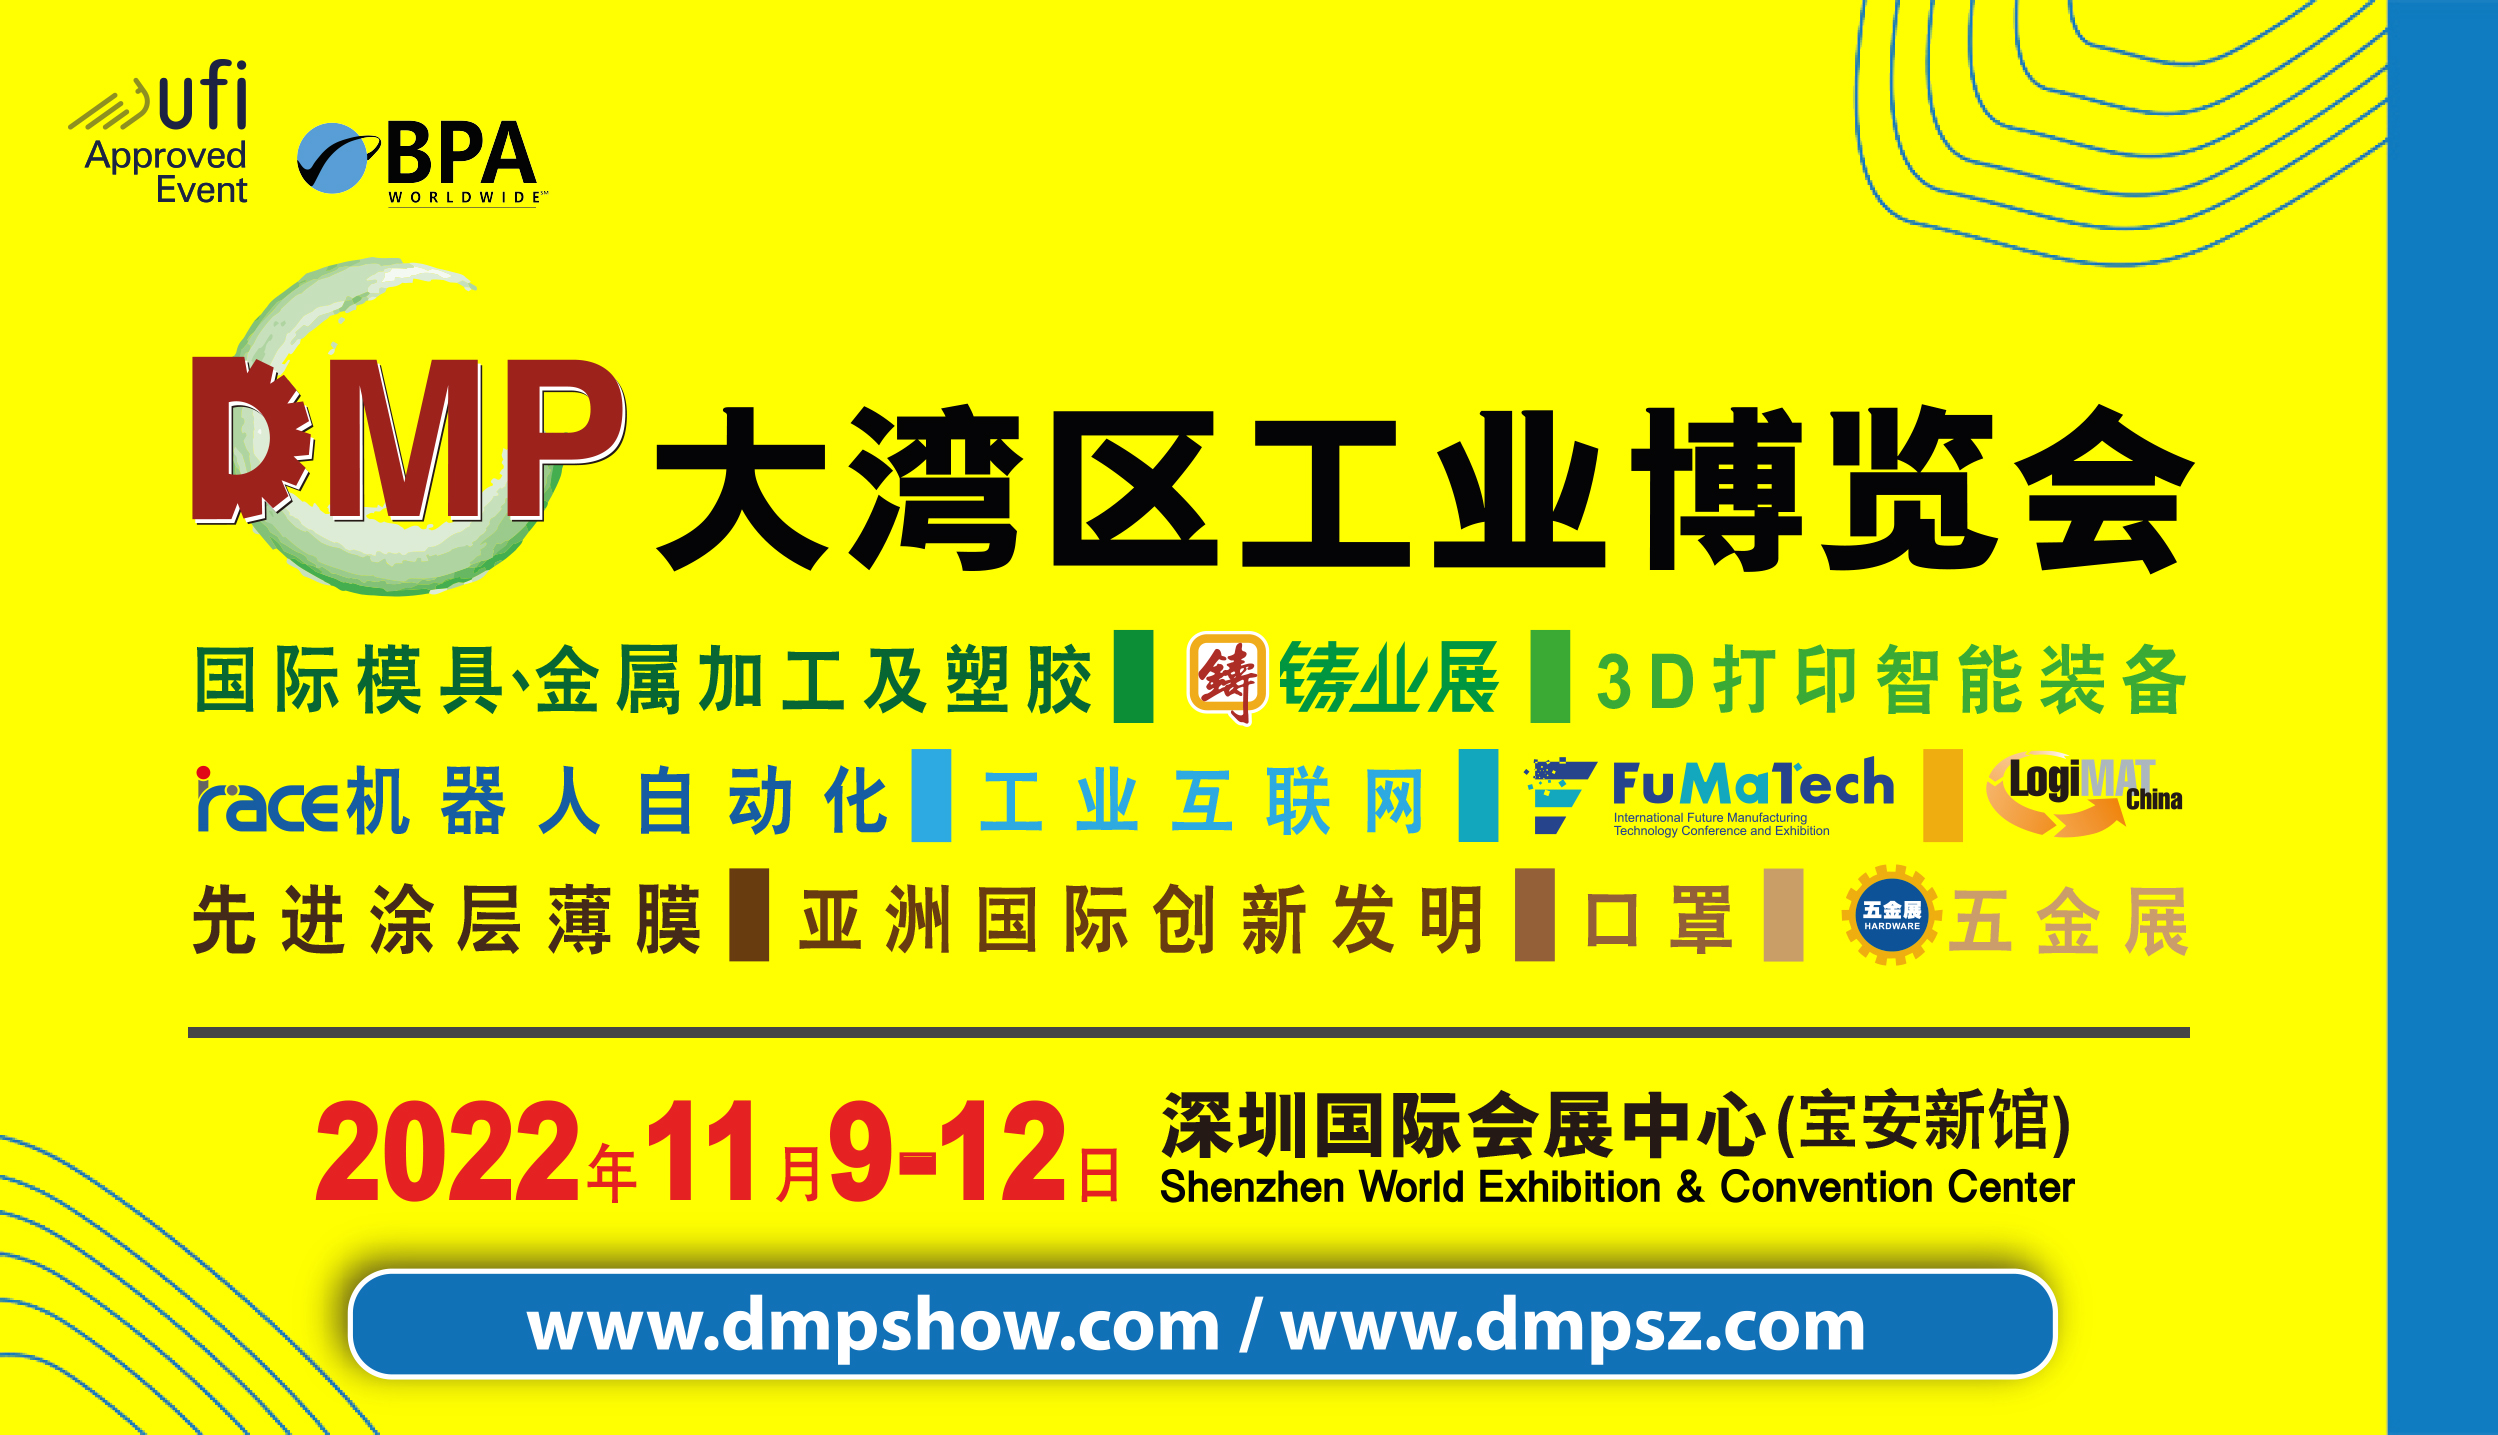 2022大湾区工业博览会将于11月9-12日在深圳举办